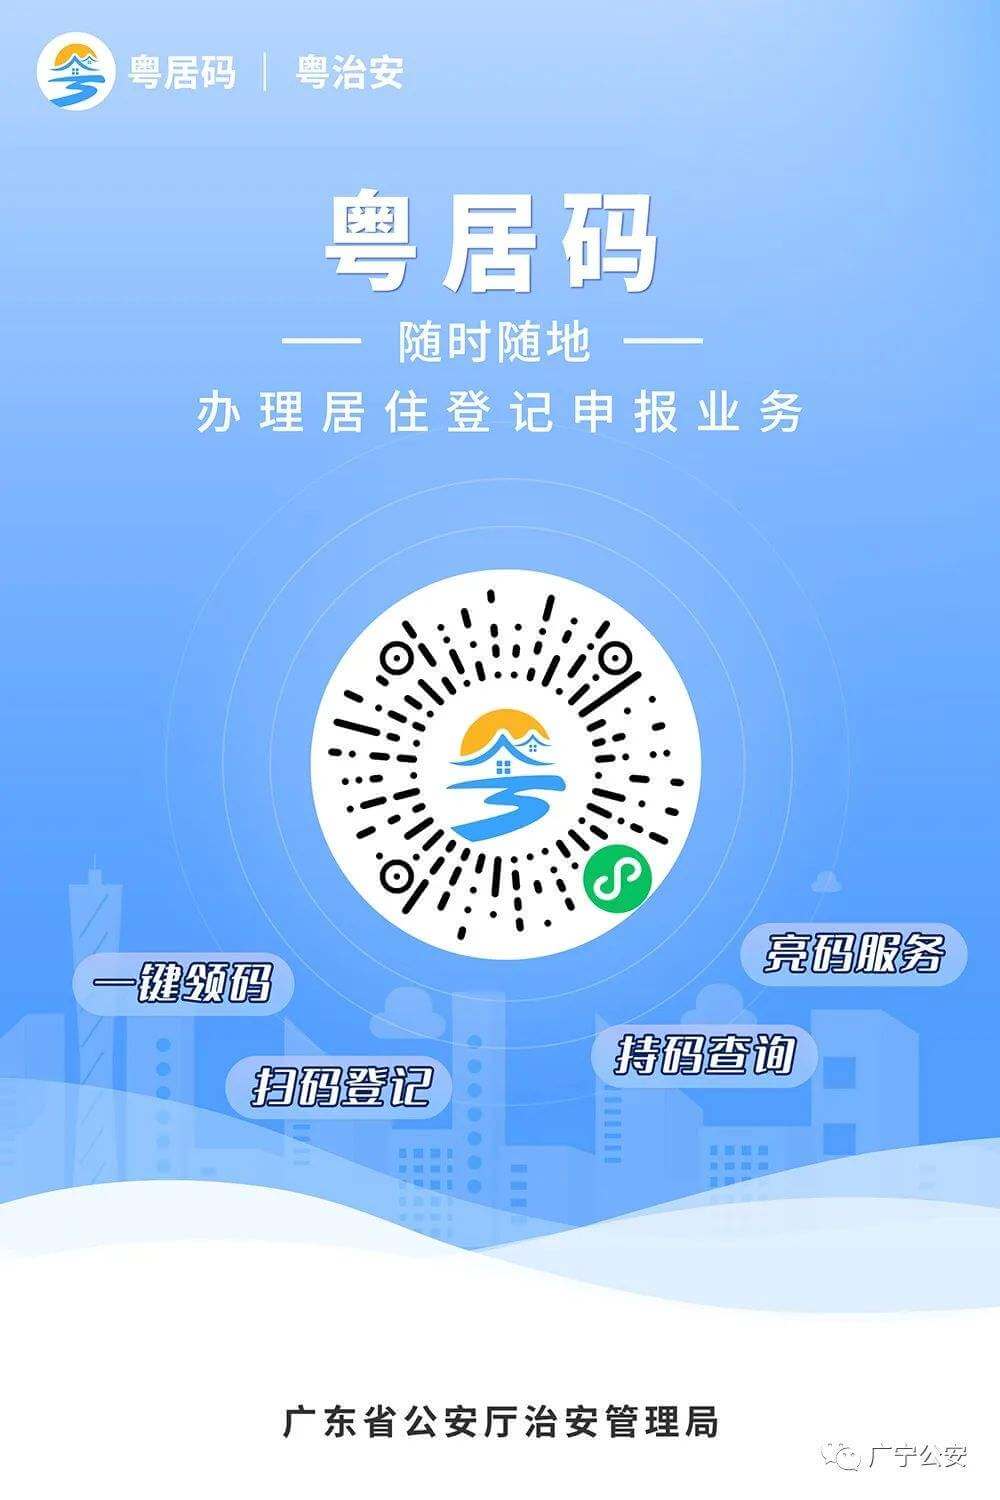 Новый код для жителей провинции Гуандун "粤居码". Нужно ли скачивать?